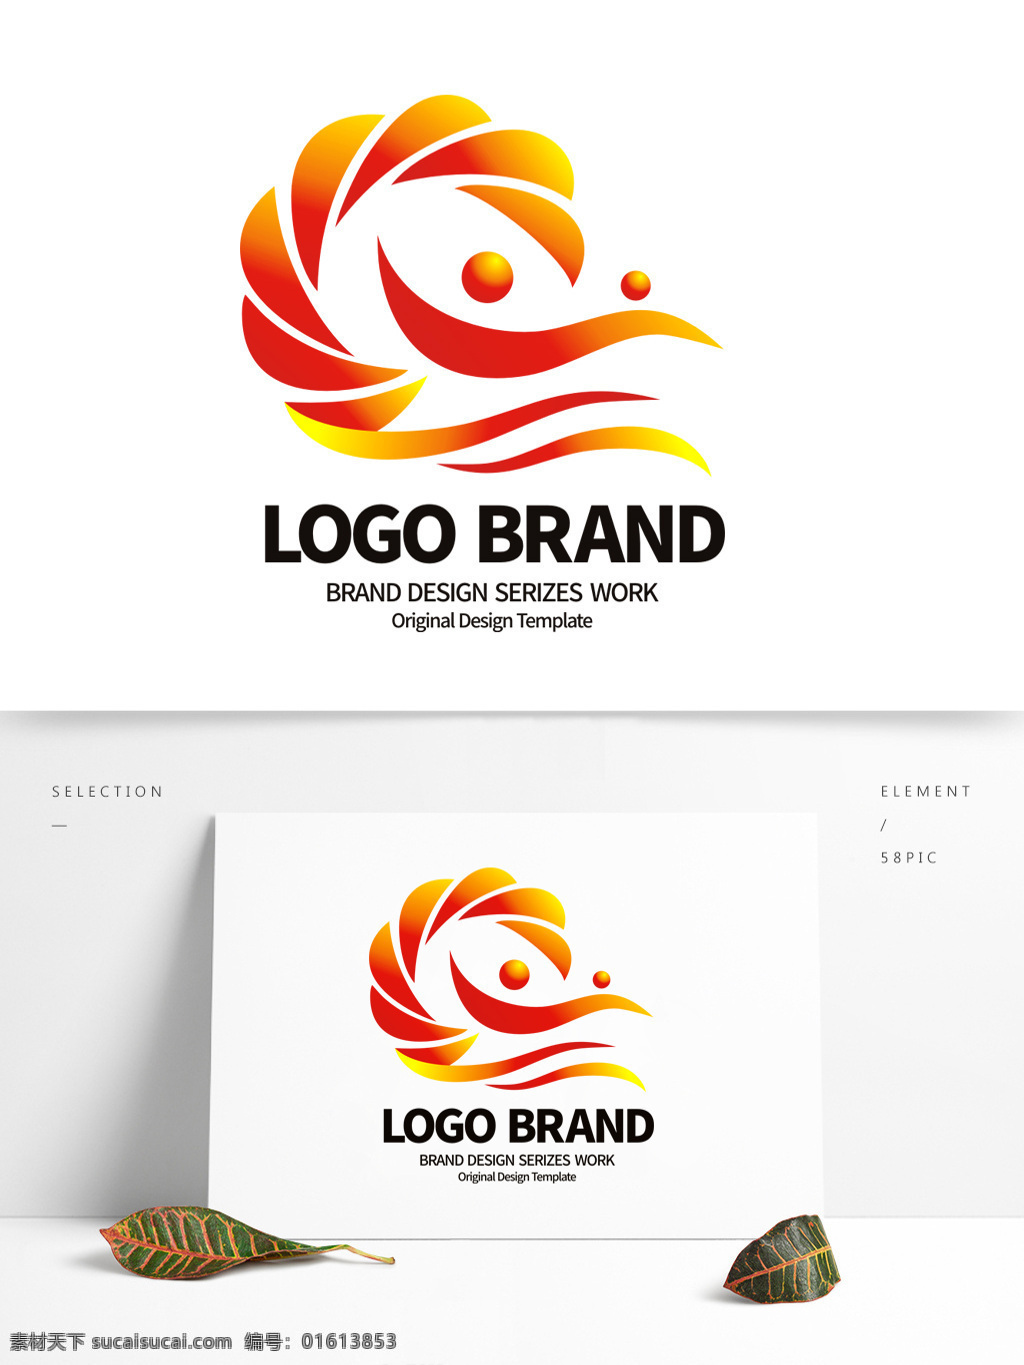 简约 红 黄 飘带 c 字母 公司 logo 标志设计 花瓣 标志 公司标志设计 企业 会徽标志设计 企业标志设计 服务logo